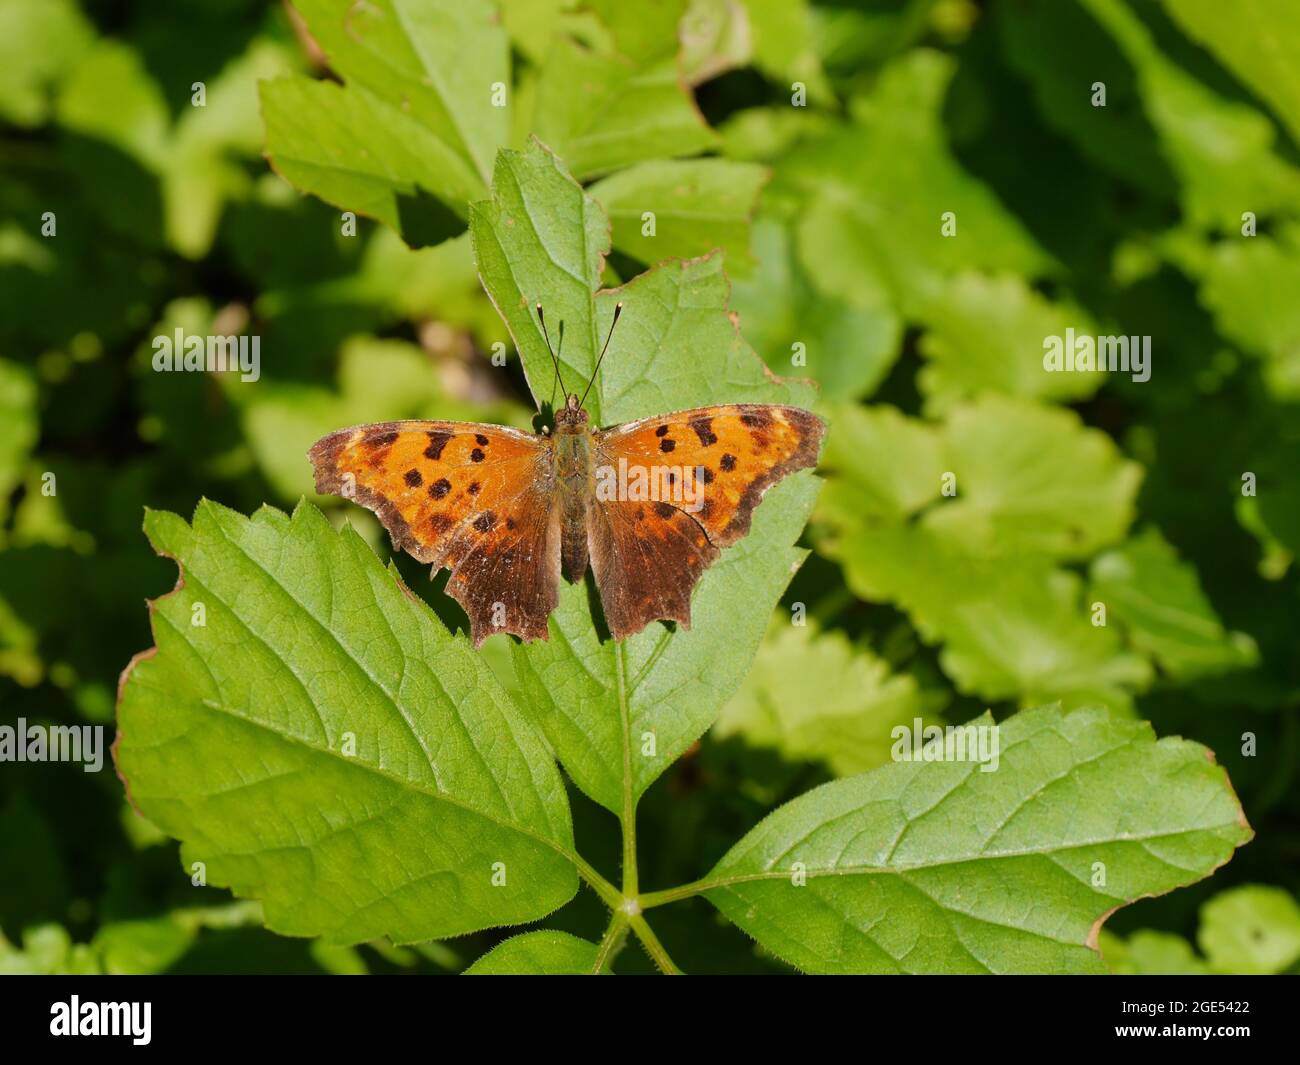 Primo piano di una farfalla a piedi di una virgola orientale che riposa nella foresta su una foglia di pianta alla luce del sole Foto Stock